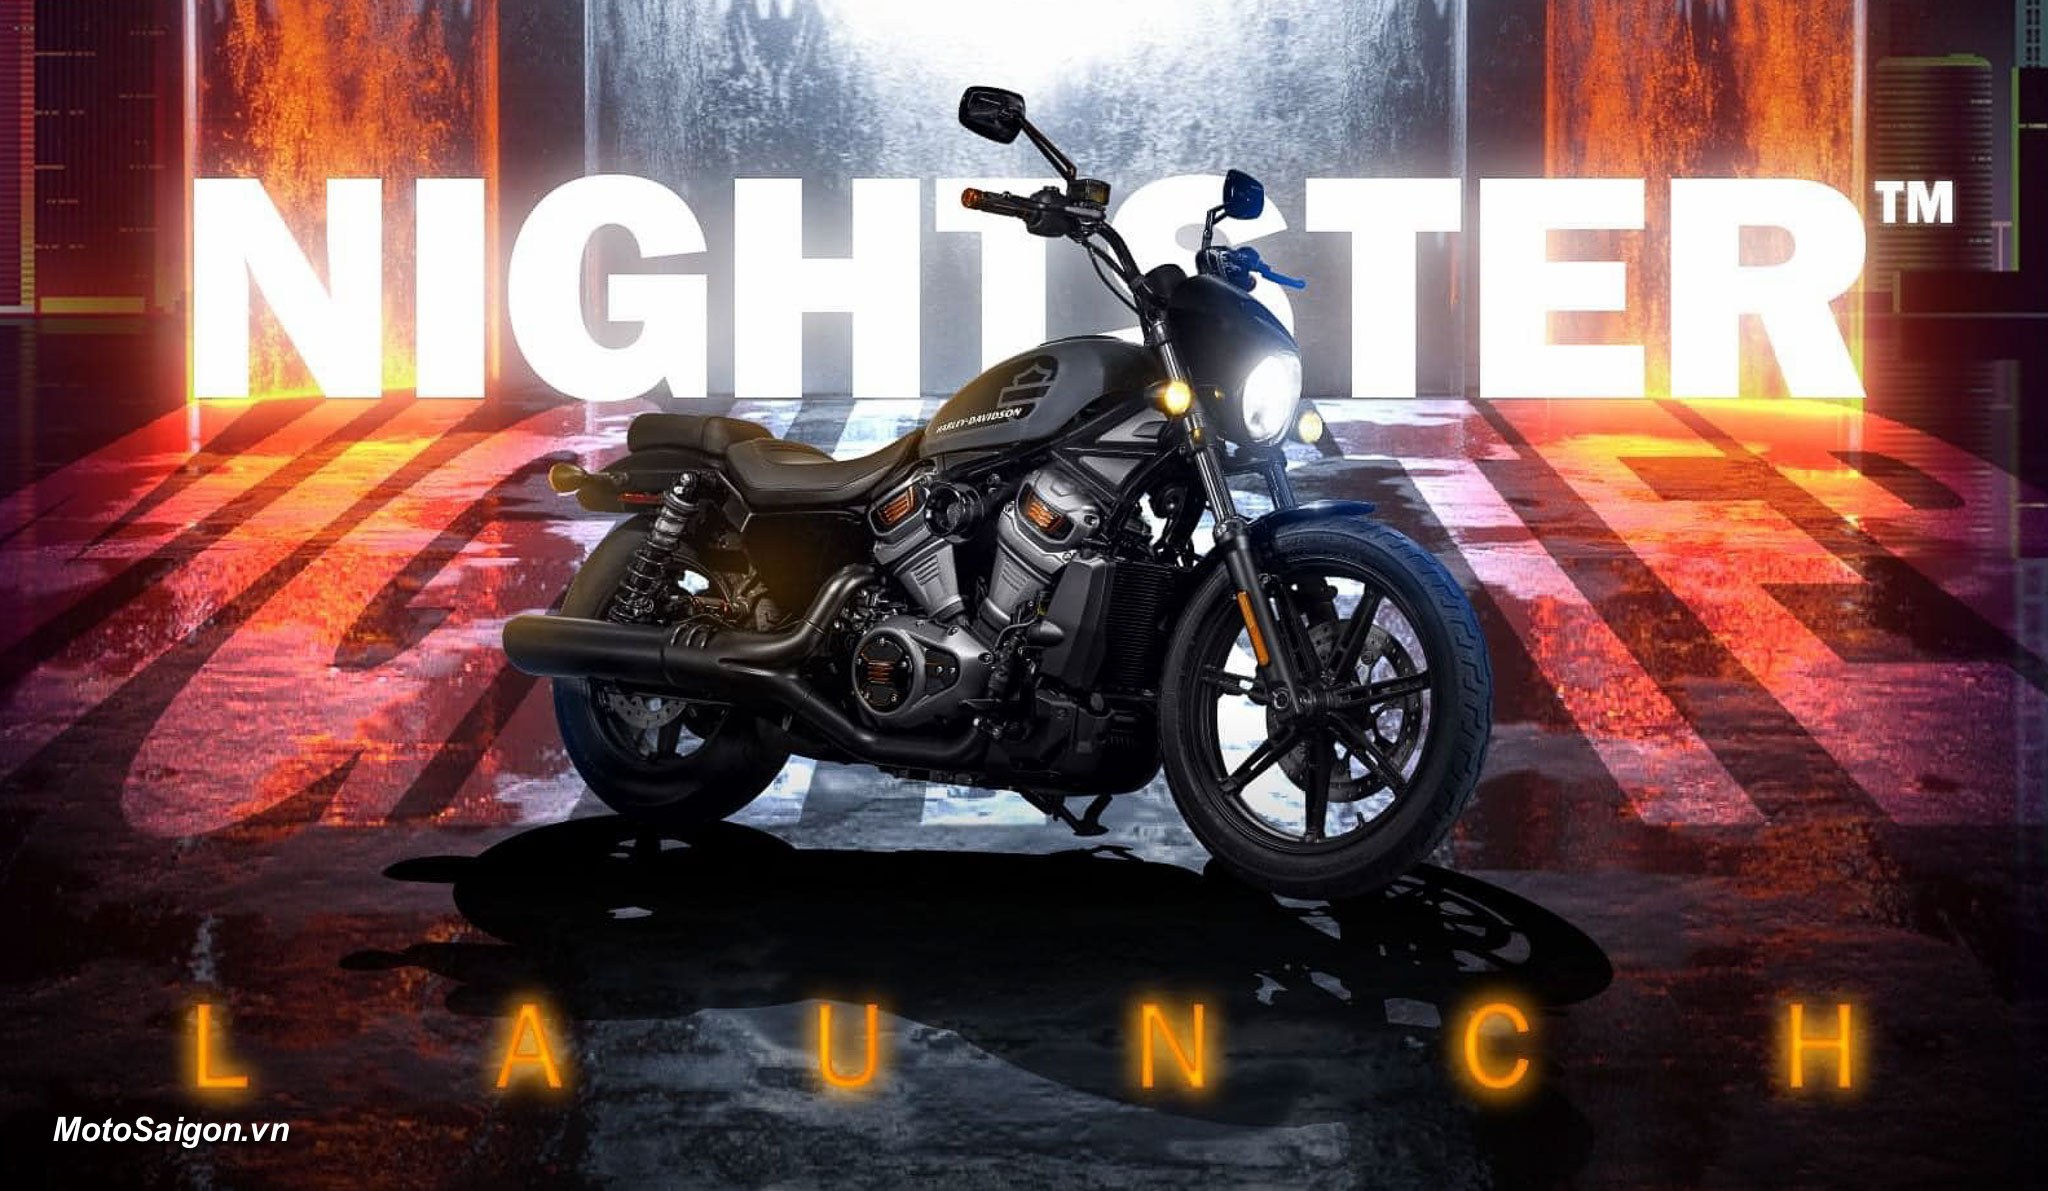 Ngắm các phiên bản độ đẹp của Nightster trước giờ công bố giá bán tại Việt Nam